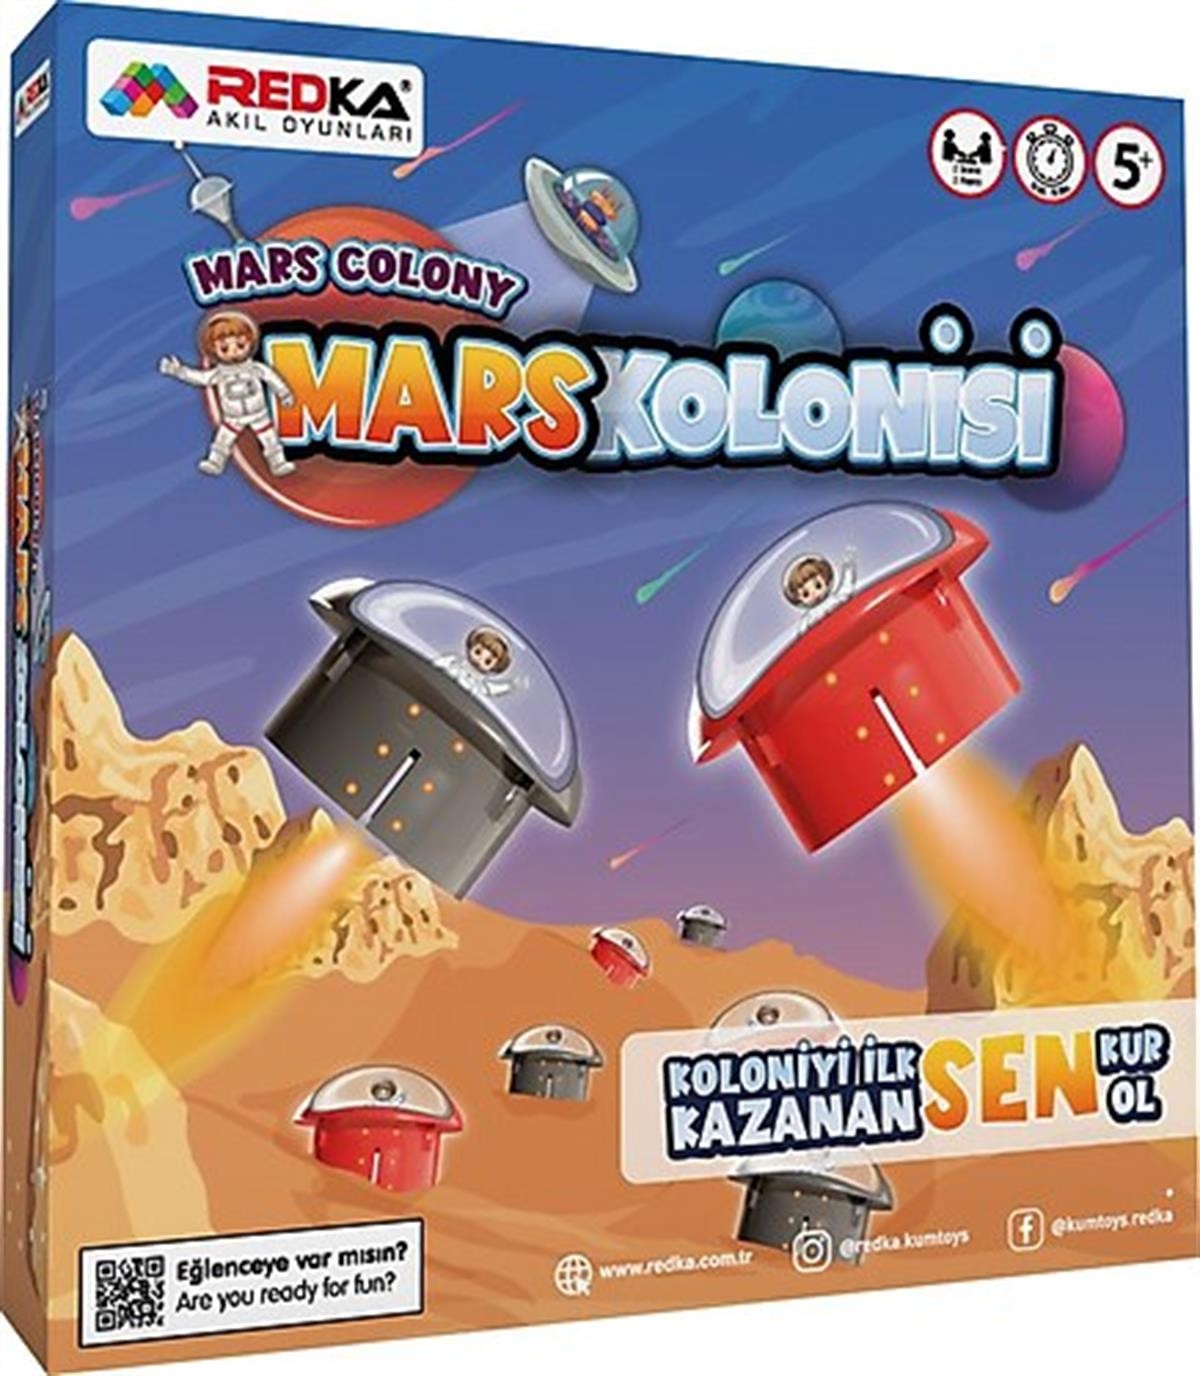 Redka Mars Kolonisi